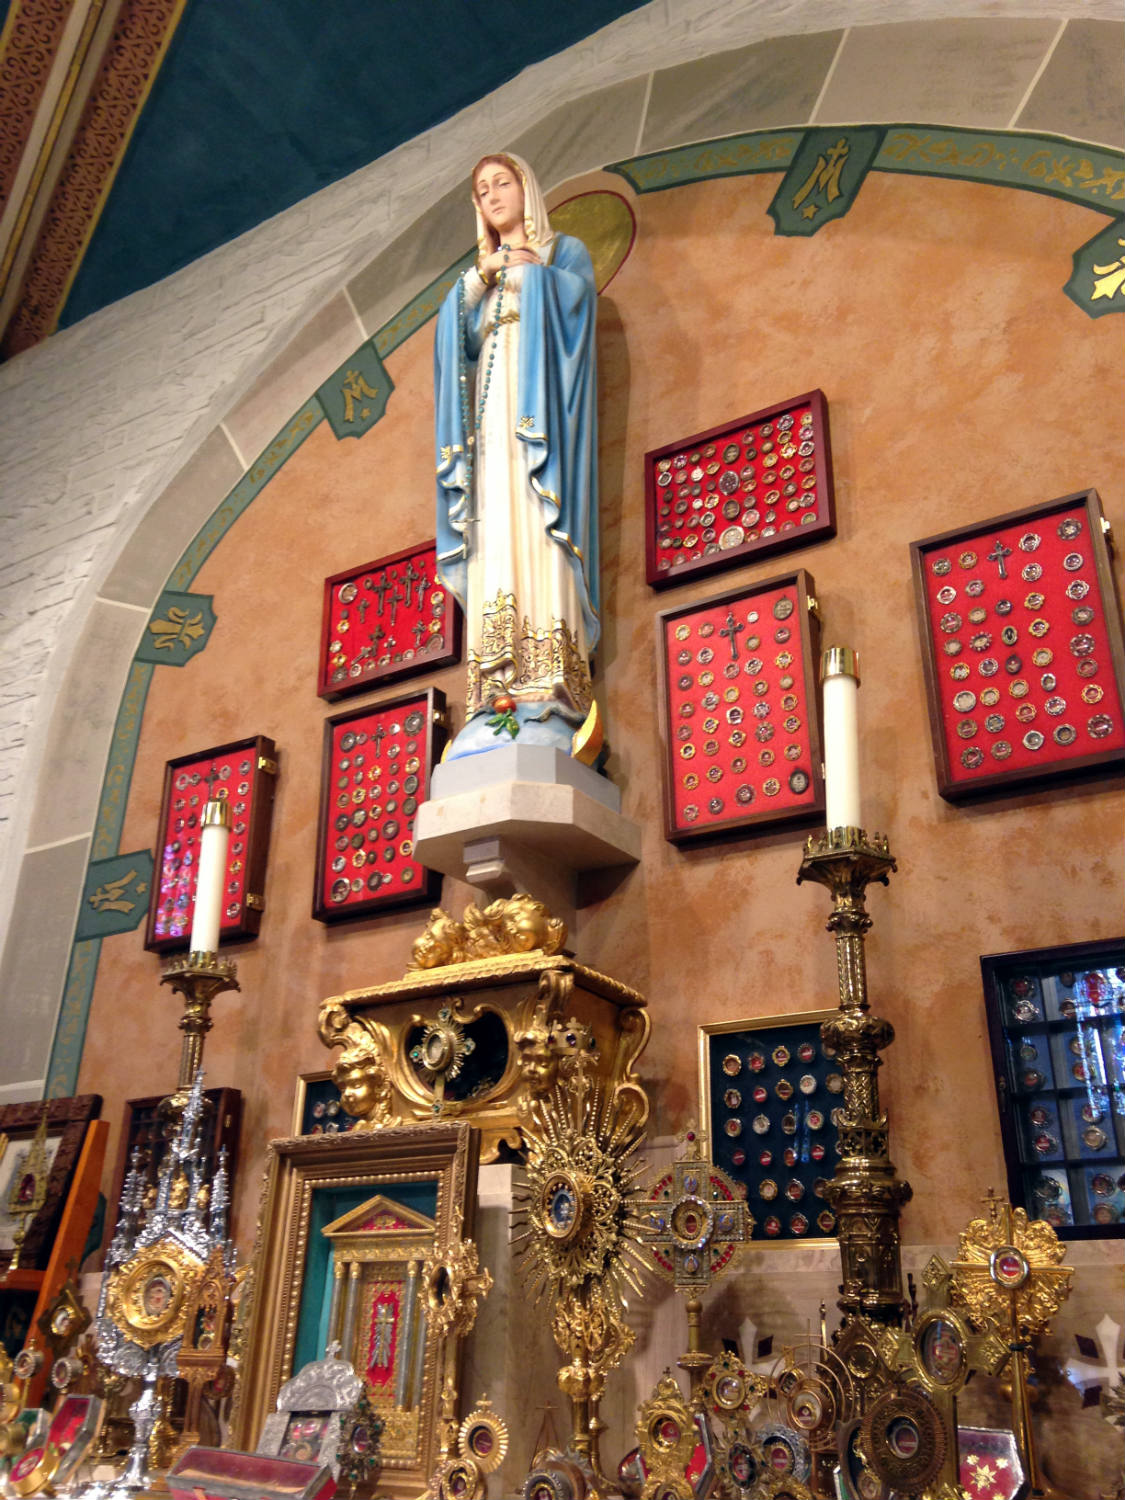 Relic Collection at St. John Gualbert's Church in Cheektowaga, NY